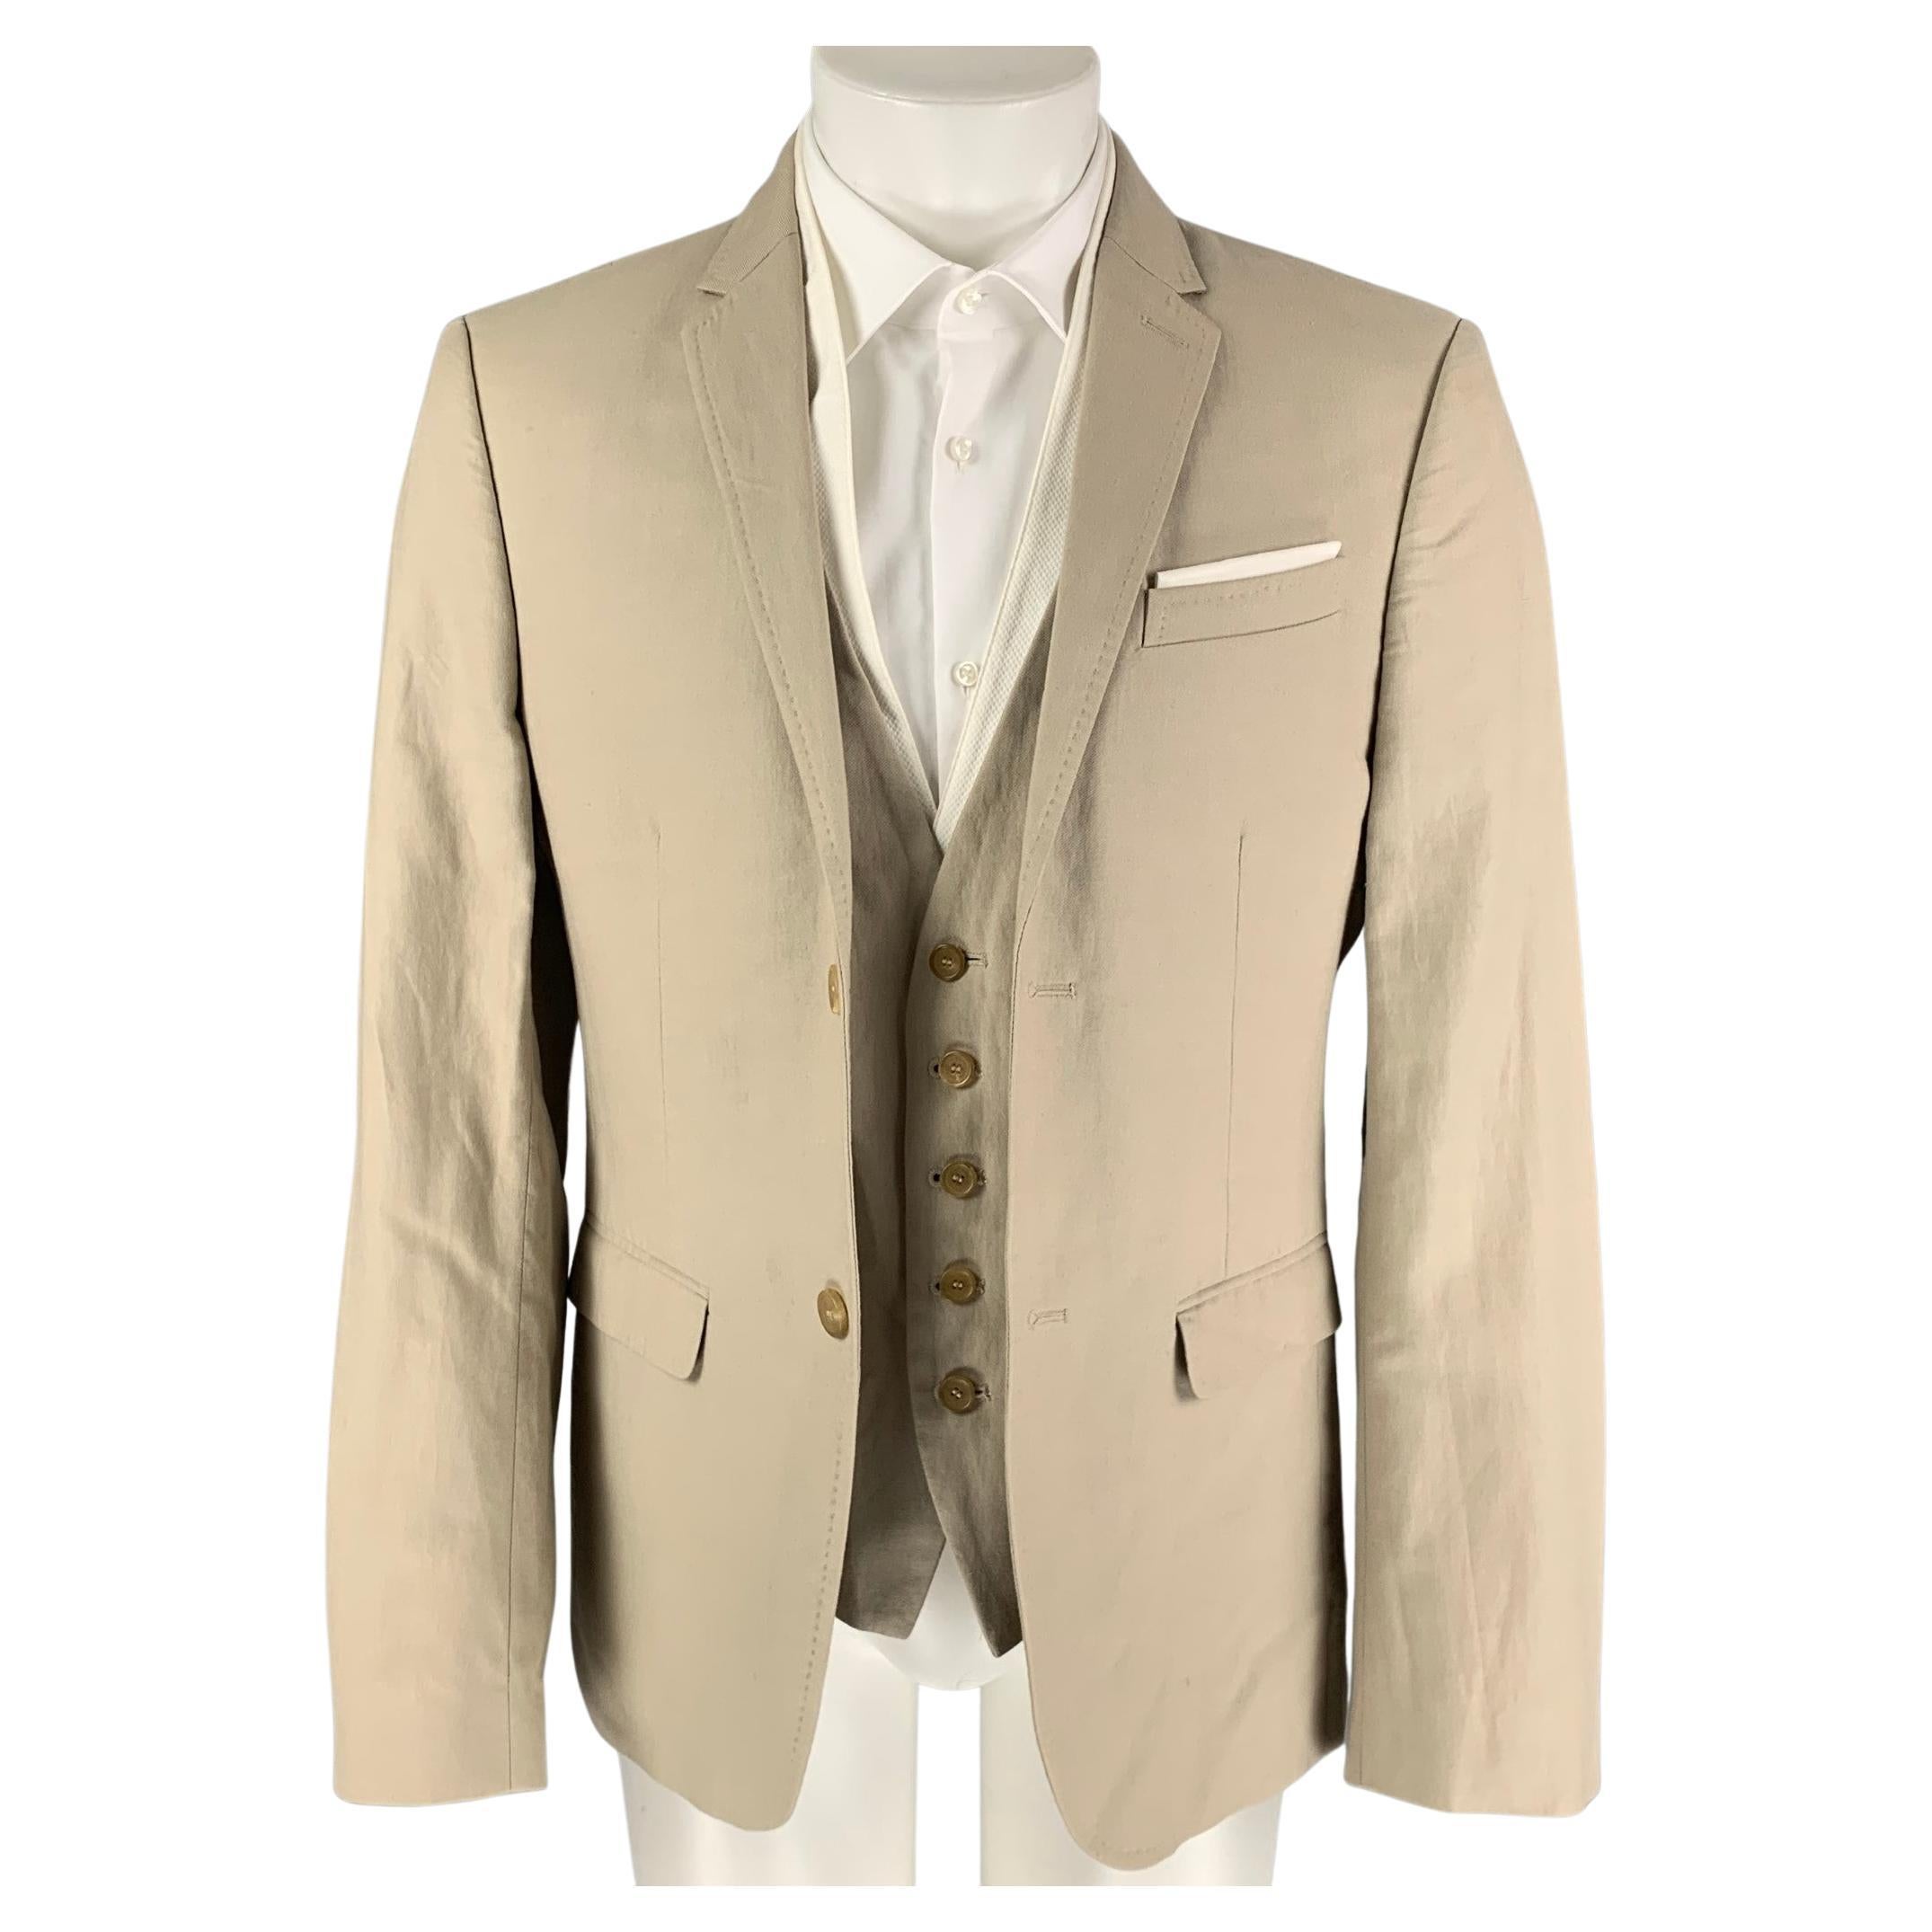 NEIL BARRETT Size 40 Khaki White Cotton / Linen Sport Coat